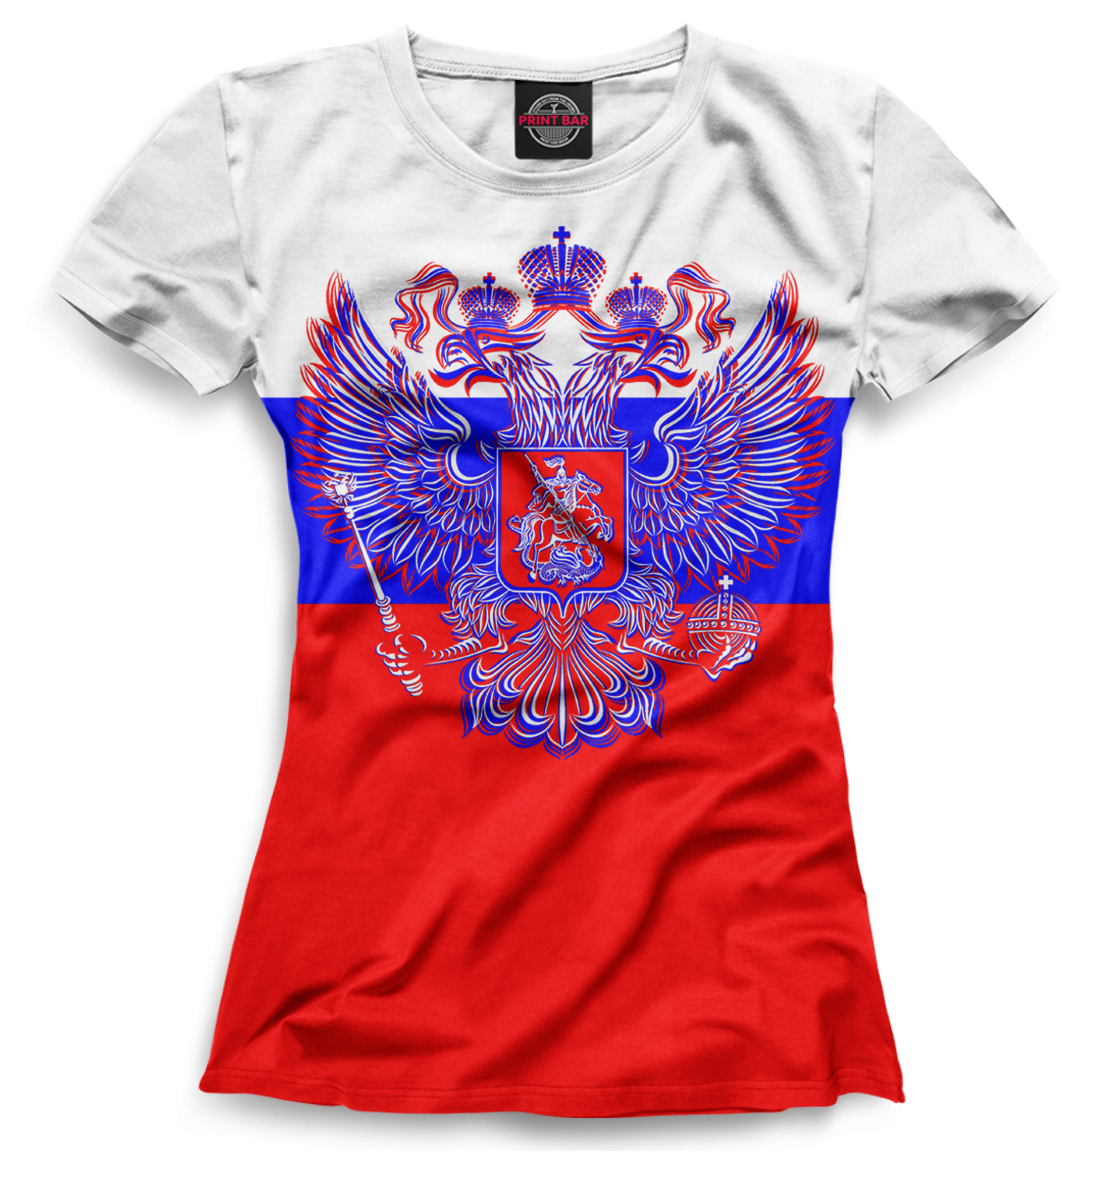 Спортивная одежда с российской символикой